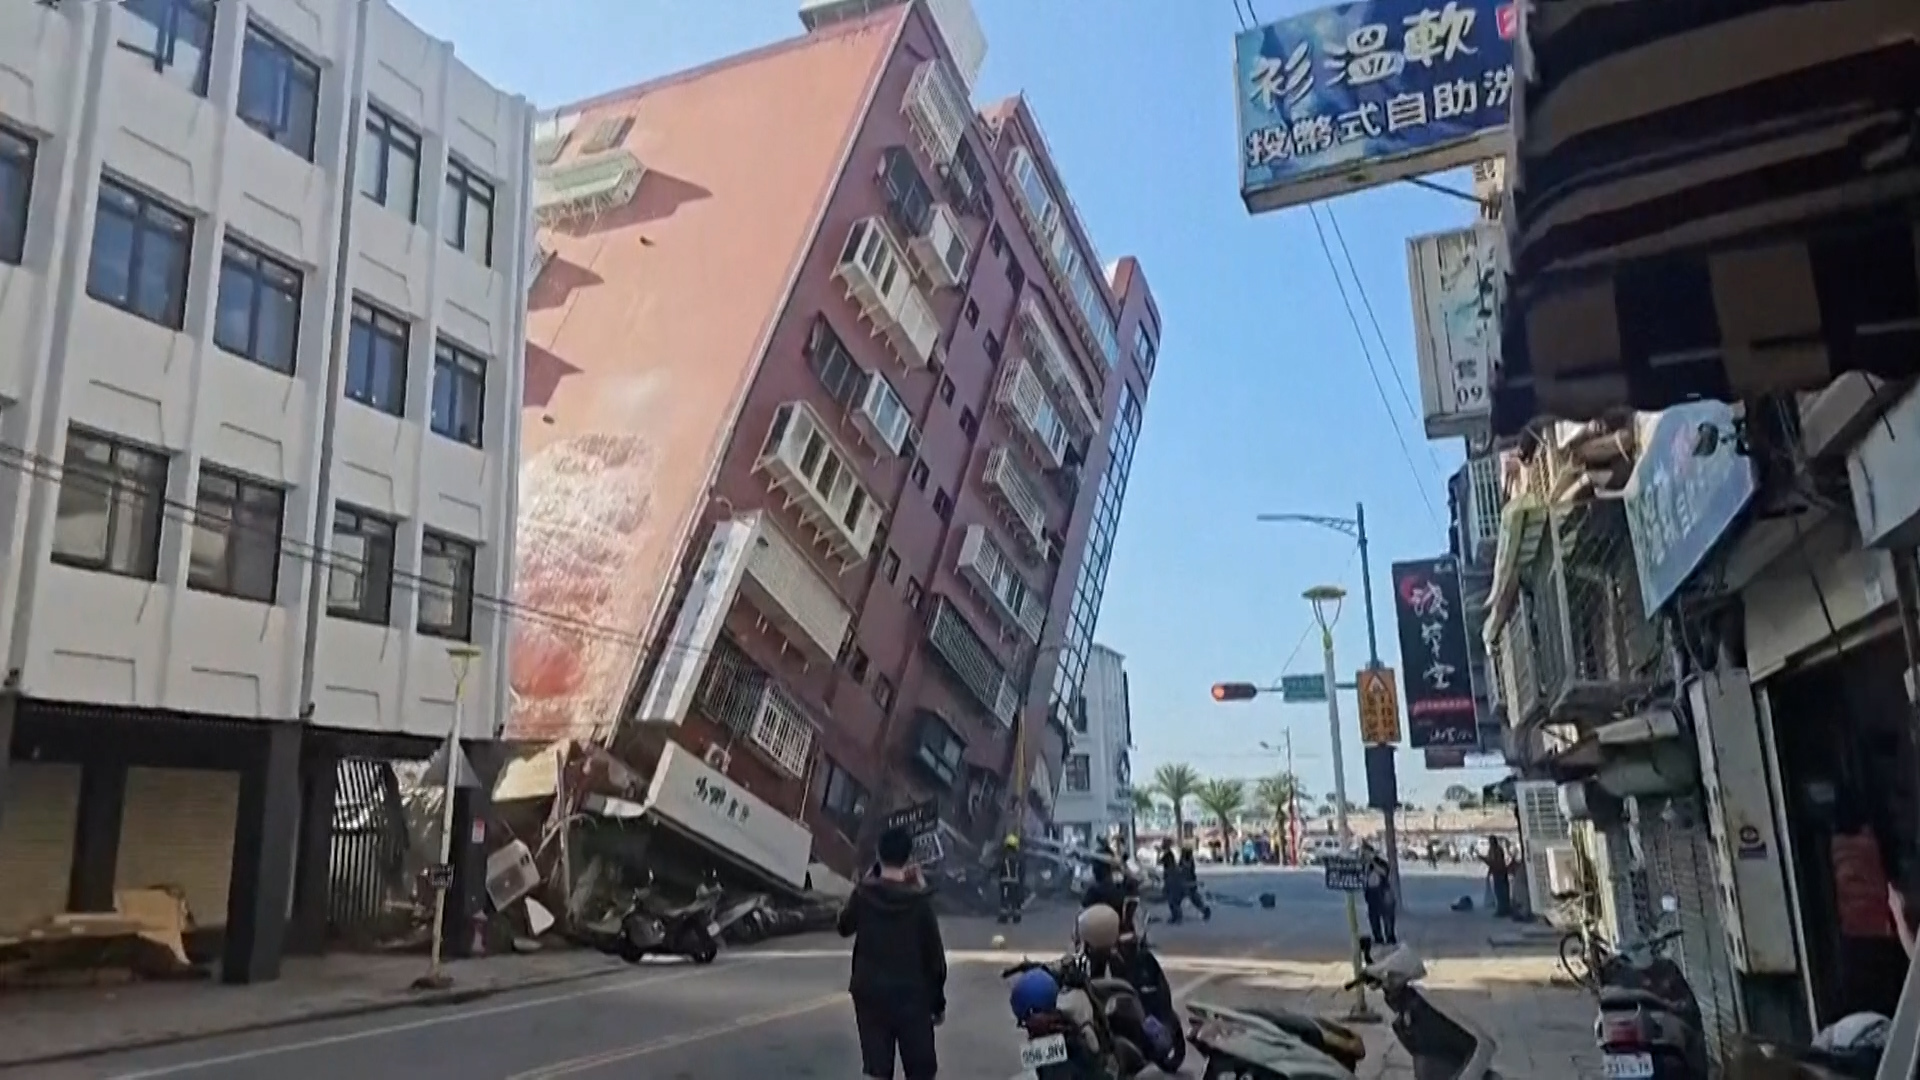 قتلى وجرحى بزلزال كان الأعنف في تايوان منذ 25 عاما (فيديو)